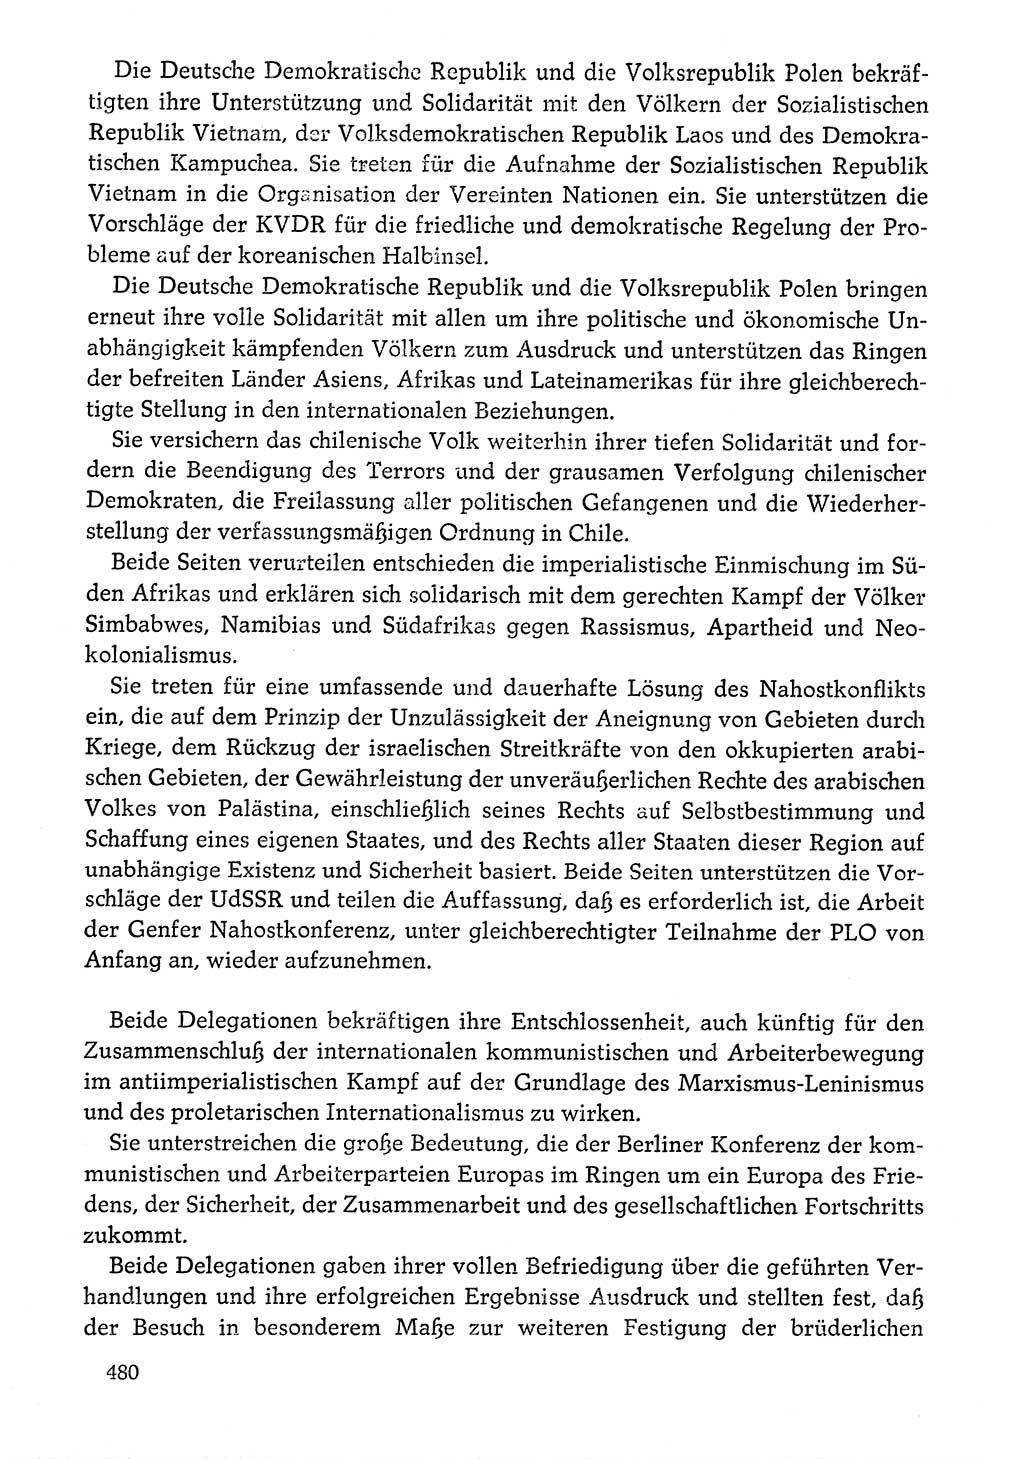 Dokumente der Sozialistischen Einheitspartei Deutschlands (SED) [Deutsche Demokratische Republik (DDR)] 1976-1977, Seite 480 (Dok. SED DDR 1976-1977, S. 480)